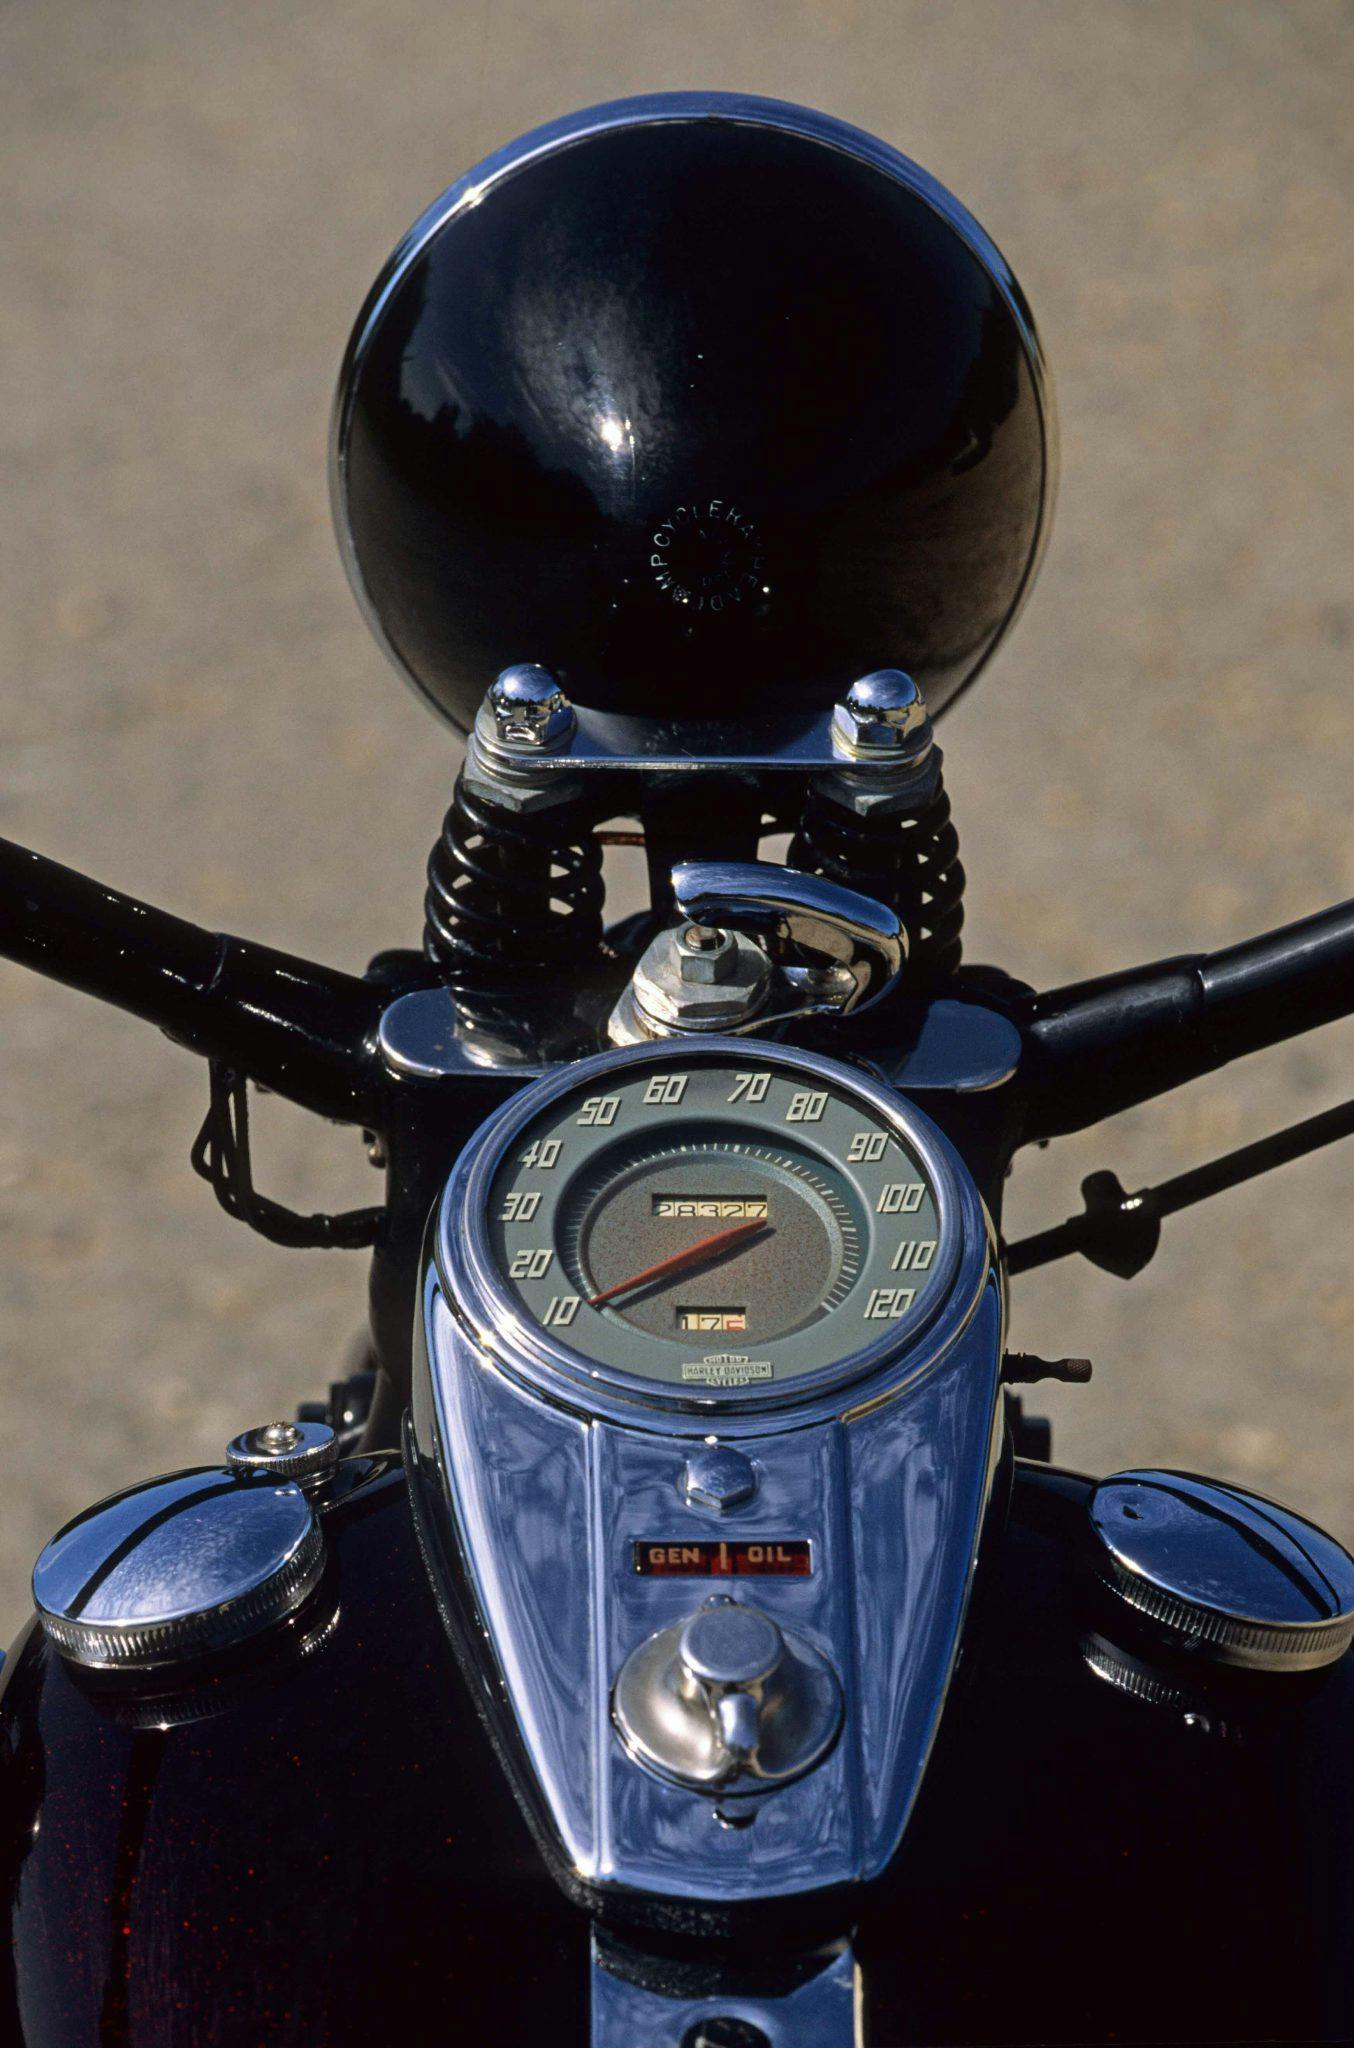 Harley-Davidson WL45 motorcycle speedometer vertical